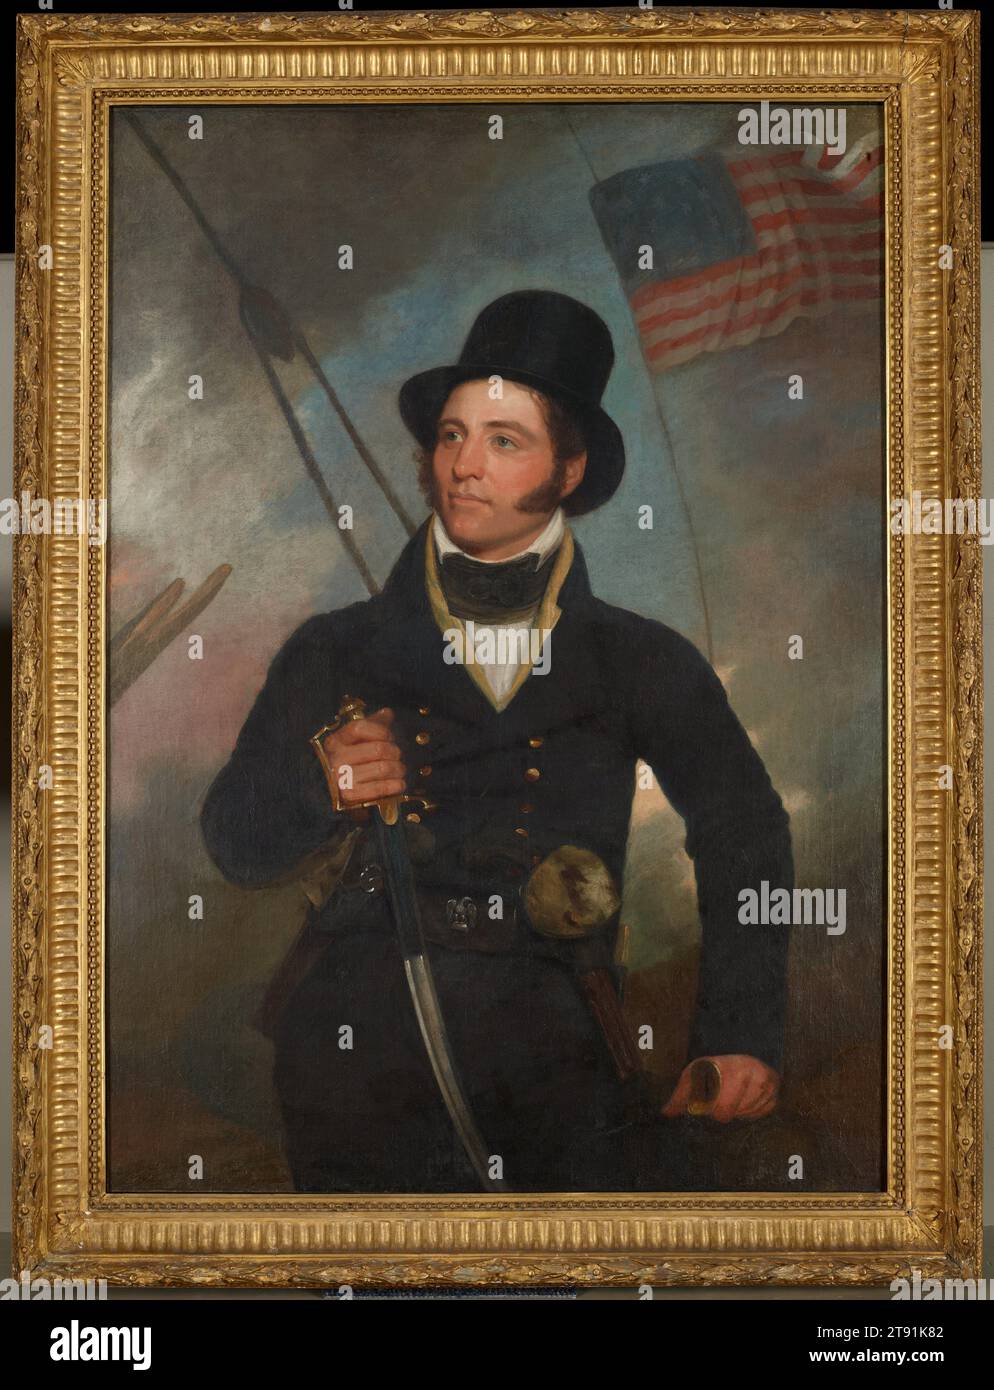 Portrait du capitaine Samuel Chester Reid, 1815, John Wesley Jarvis, américain, 1780-1839, 50 1/2 x 36 3/8 po (128,27 x 92,39 cm) (toile)58 7/8 x 44 5/8 x 4 po (149,54 x 113,35 x 10,16 cm) (cadre extérieur), huile sur toile, États-Unis, 19e siècle, le capitaine Samuel Reid fut l'un des héros de la guerre de 1812, battant les Britanniques en 1814 et sauvant la Nouvelle-Orléans de la conquête britannique. En 1817, deux ans après la peinture de ce portrait, Reid dessine le motif actuel du drapeau américain composé d'étoiles et de barres, avec treize bandes représentant les colonies américaines originales Banque D'Images